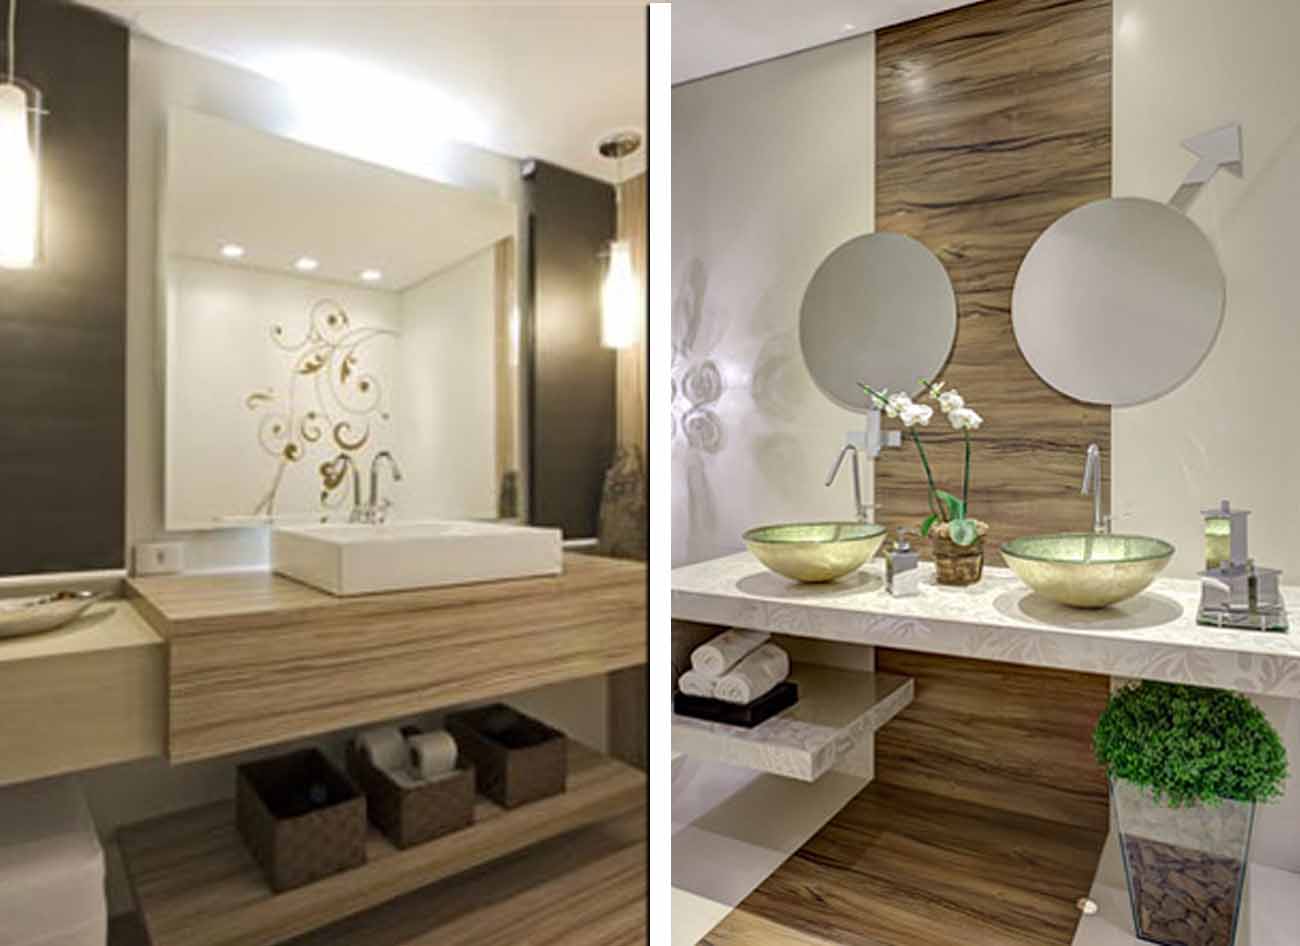 Nestas duas ideias a madeira ficou centralizada nos banheiros. A 